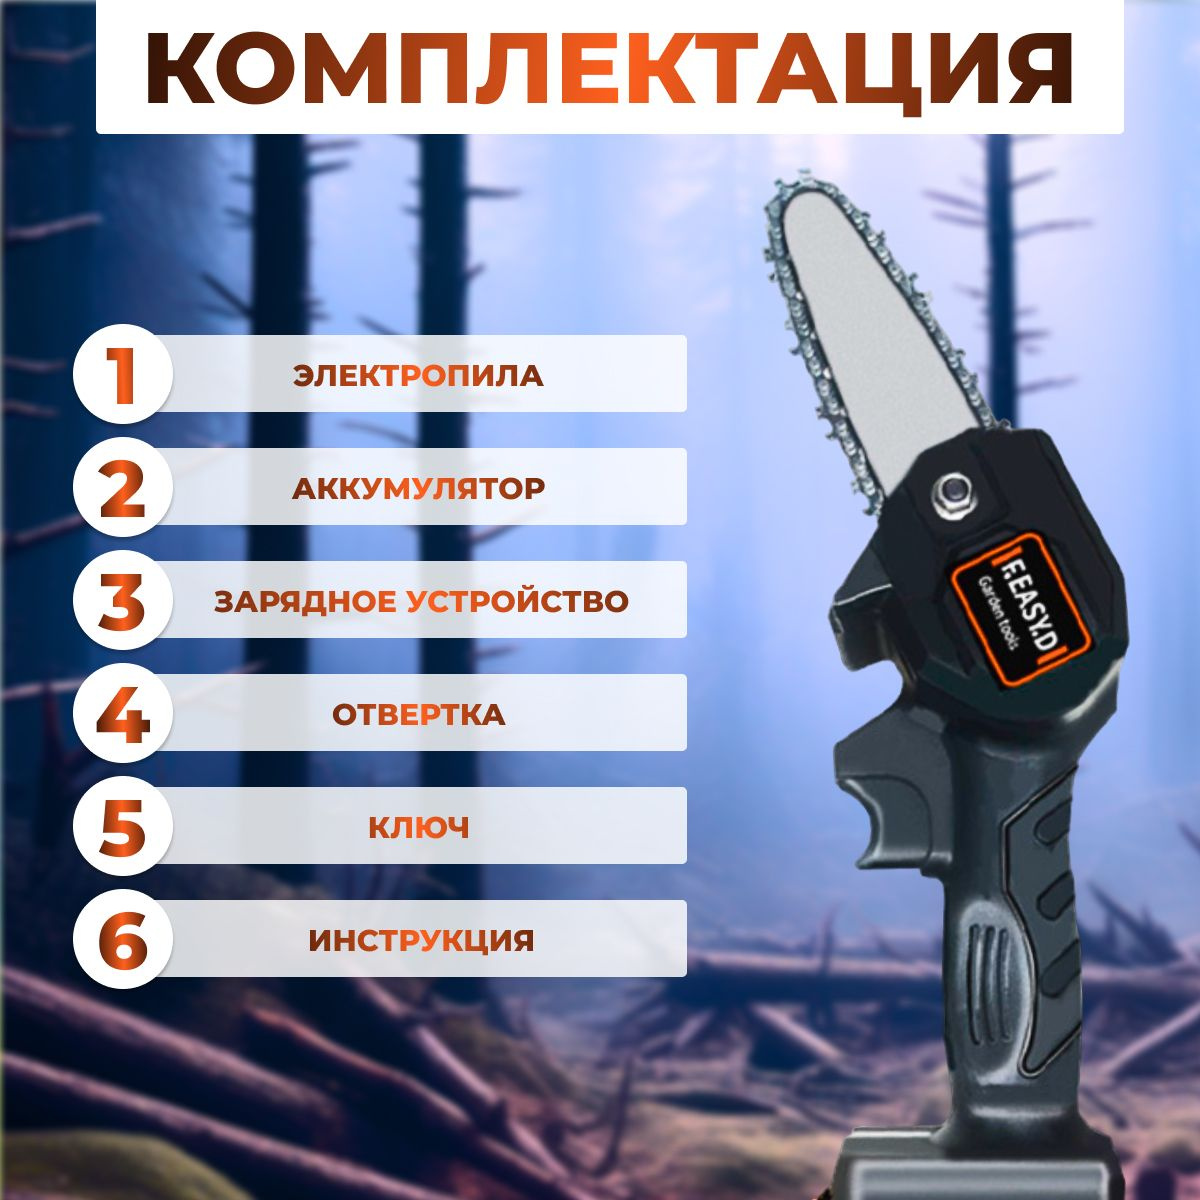 Инструкция полностью на русском языке